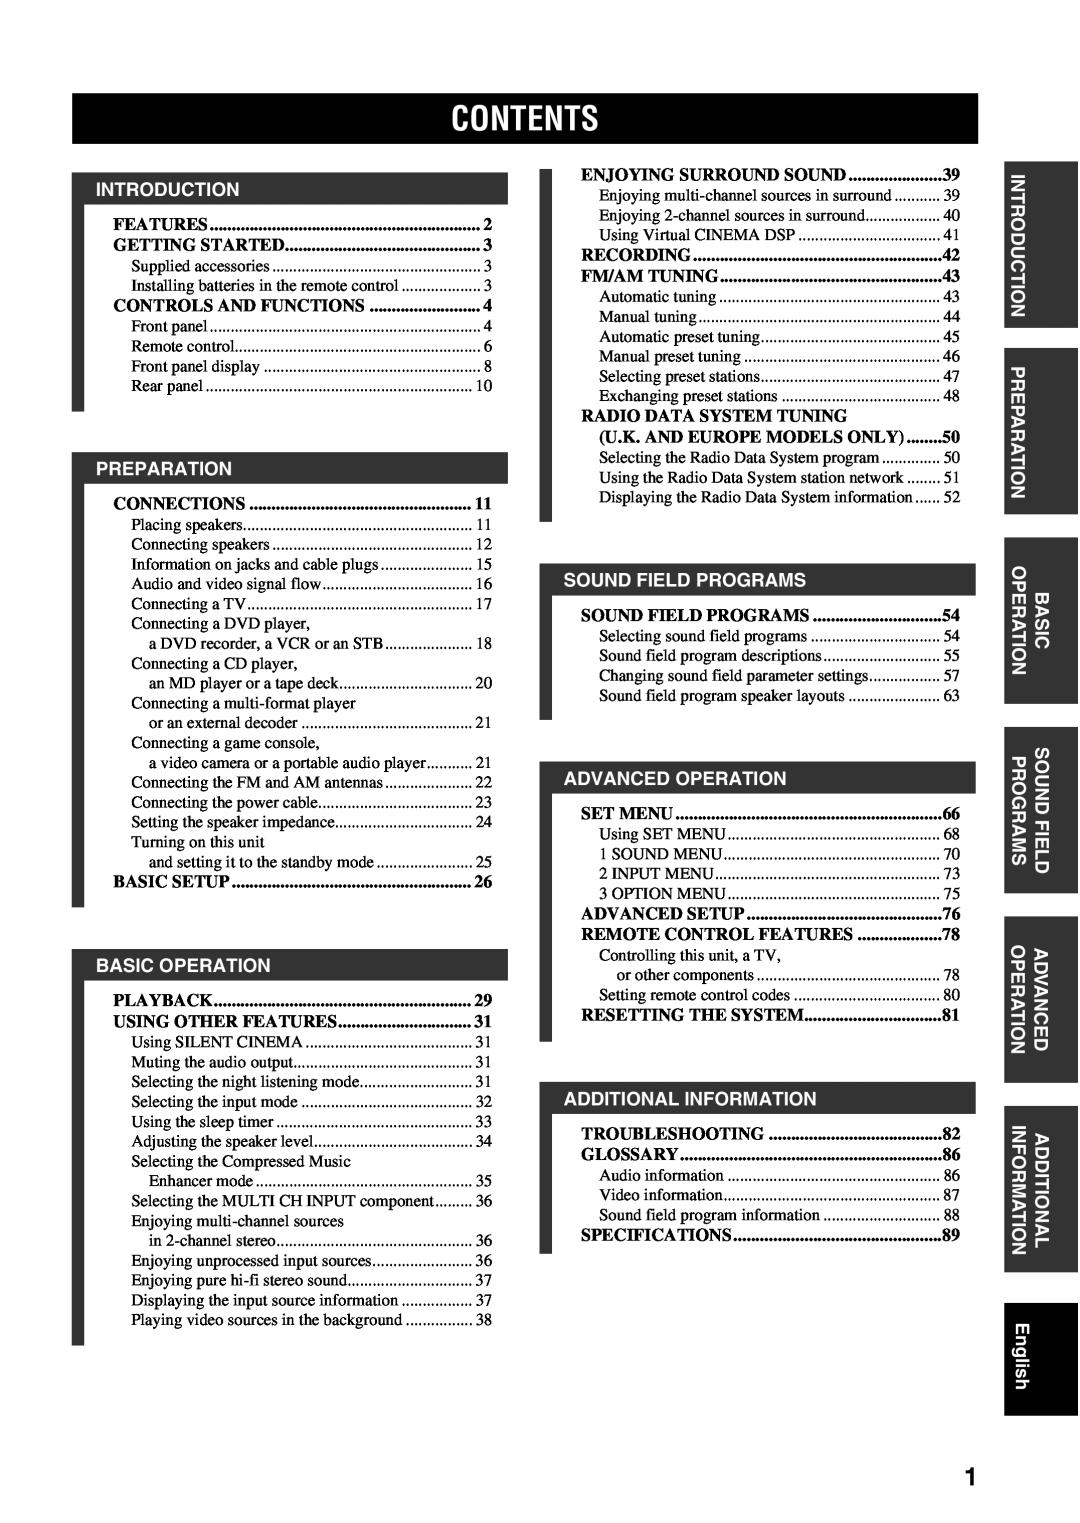 Yamaha RX-V459 owner manual Contents 